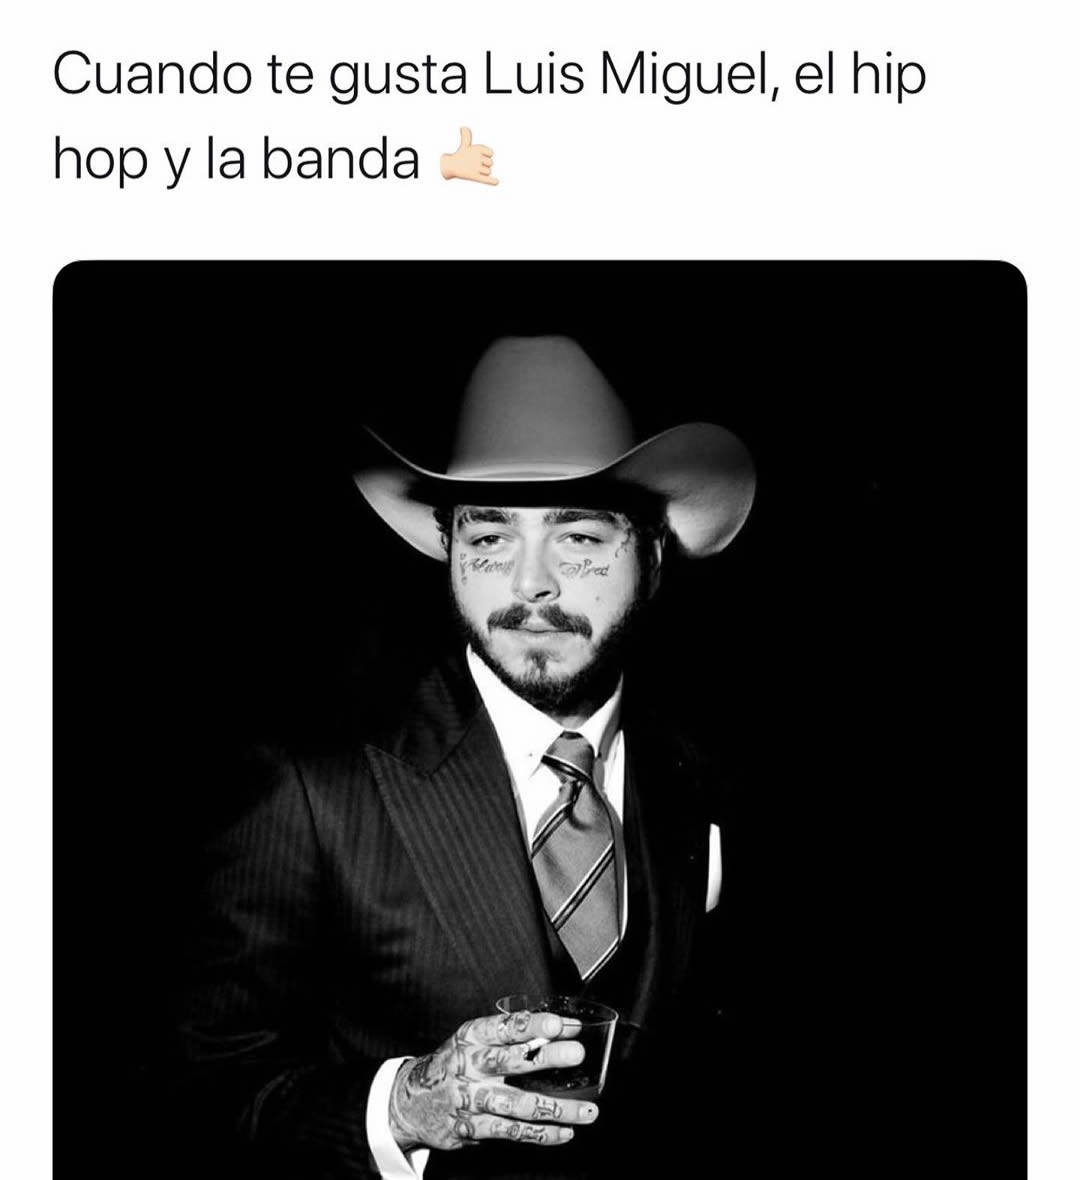 Cuando te gusta Luis Miguel, el hip hop y la banda.